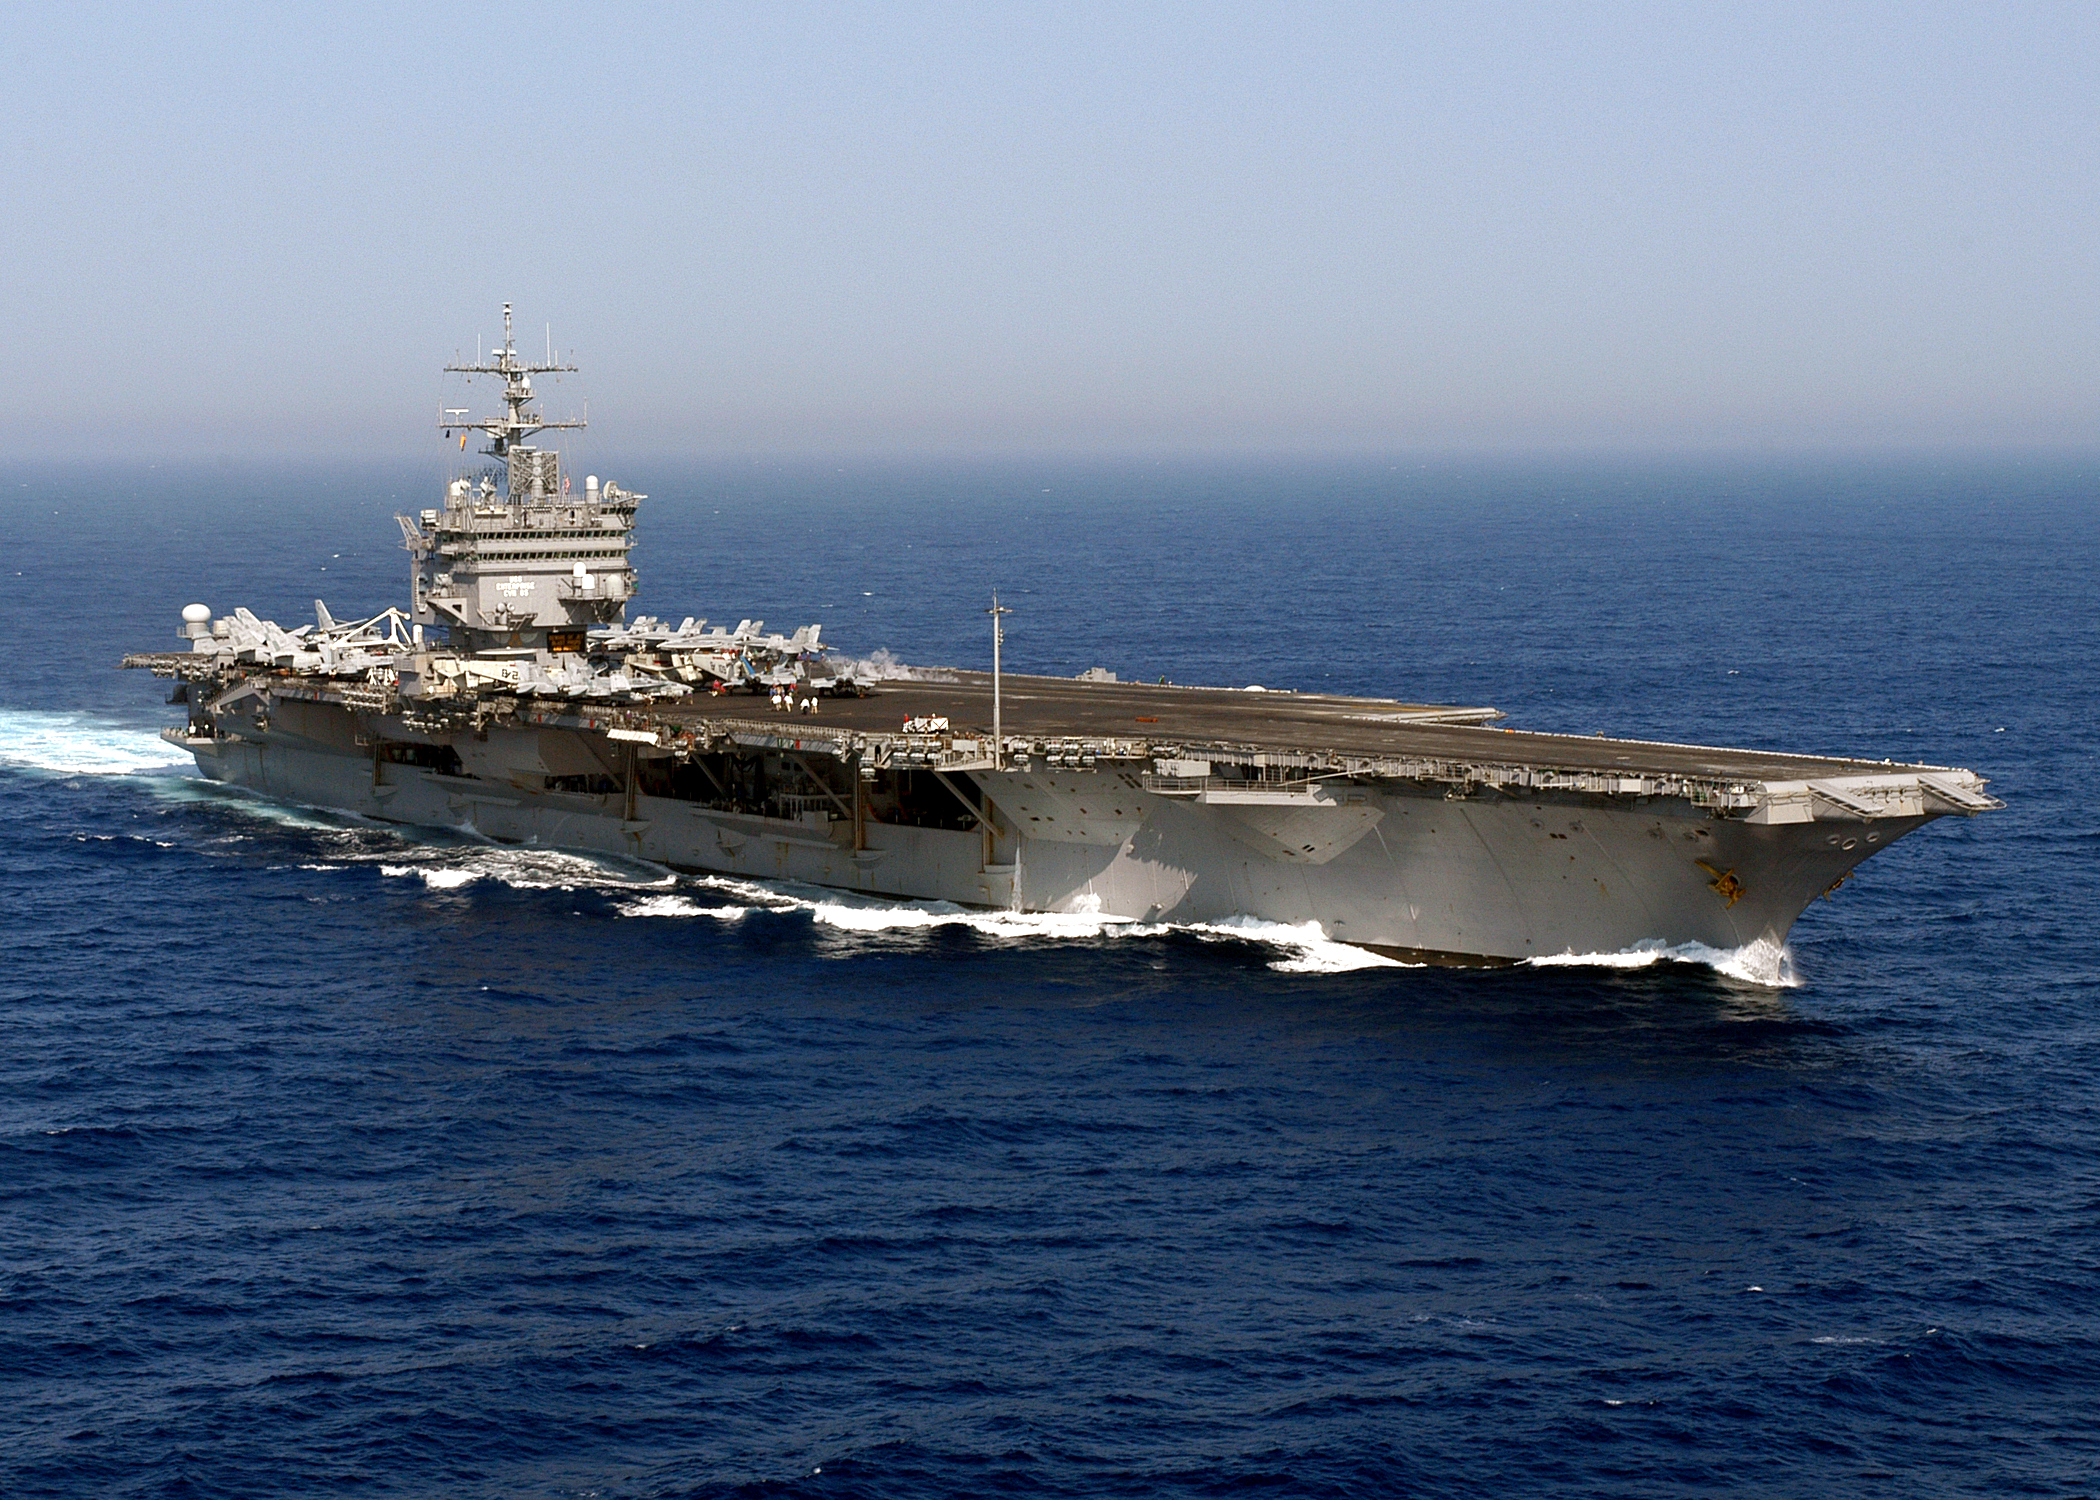 USS_Enterprise_%28CVN-65%29_underway_in_the_Atlantic_Ocean_on_14_June_2004_%28040614-N-0119G-020%29.jpg